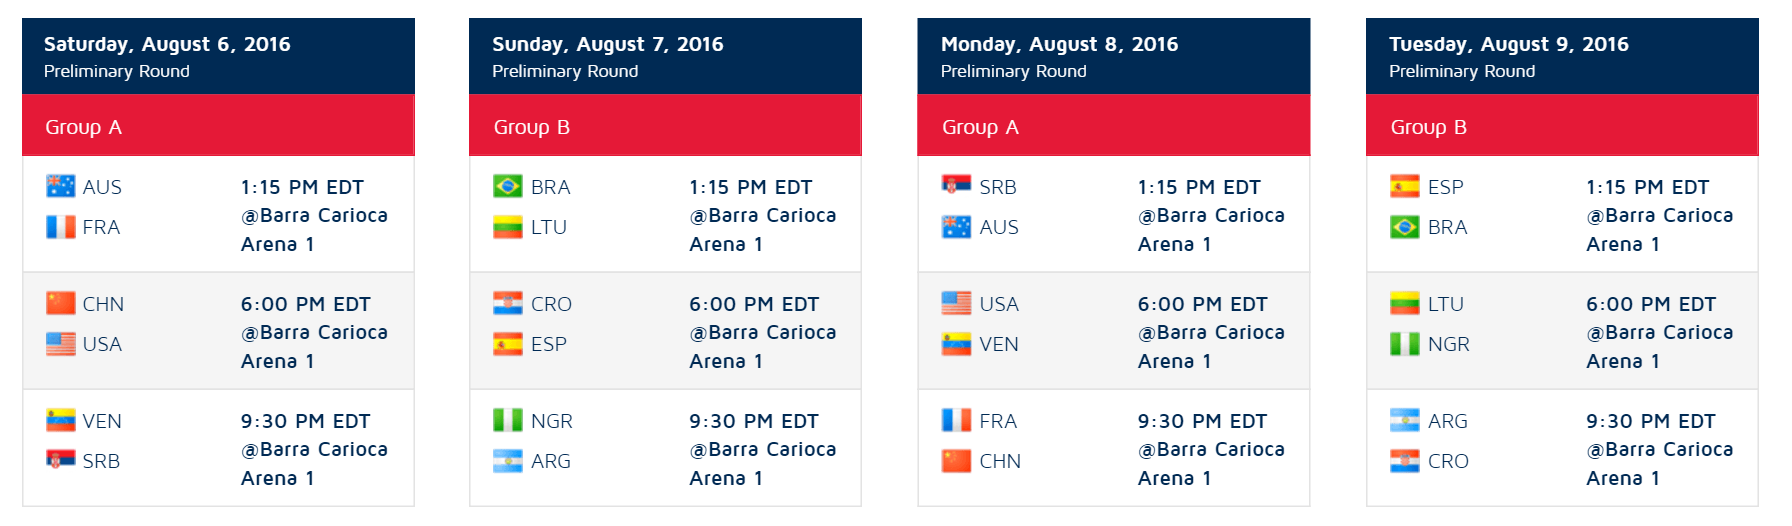 Team USA Schedule 1